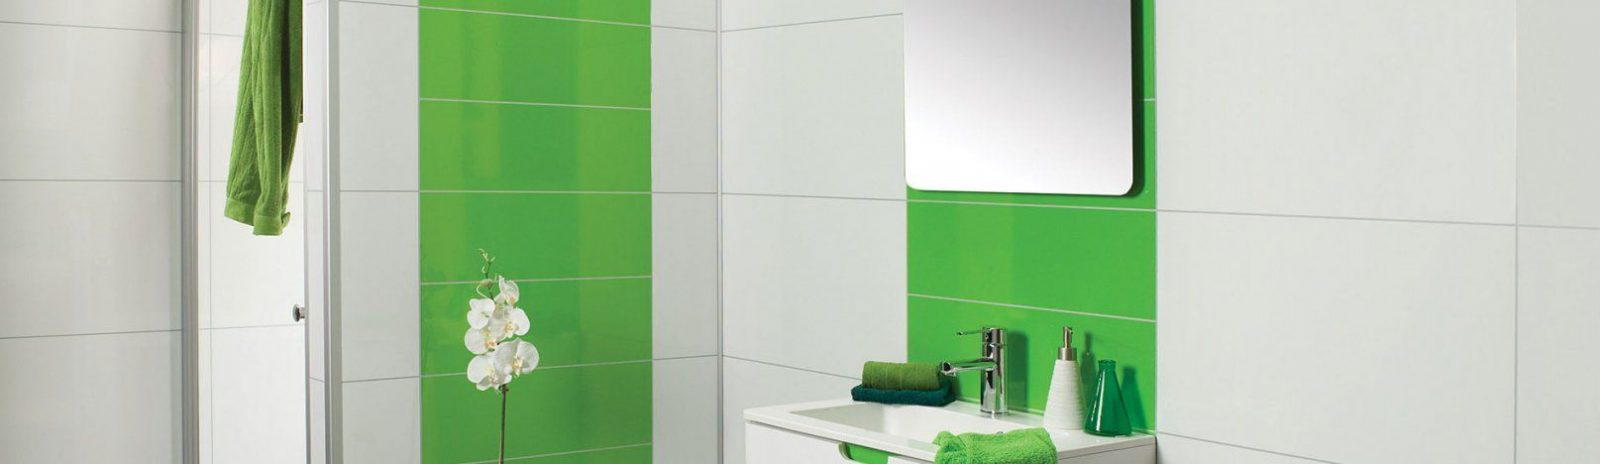 Duschecke – Modernisiert Wände In Dusche – Bad – Wc von Wandverkleidung Dusche Ohne Fliesen Photo